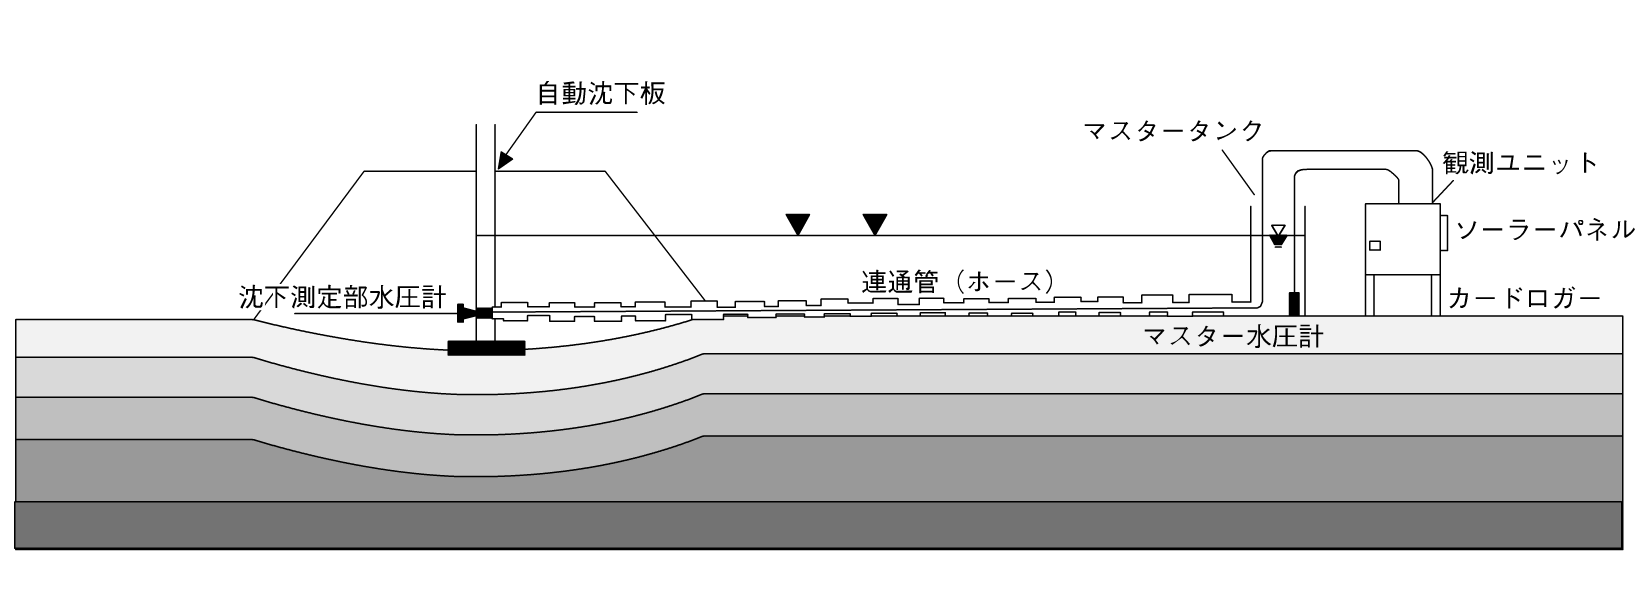 水位計の設置構造図。盛土による地表面沈下を水位レベルにより自動観測